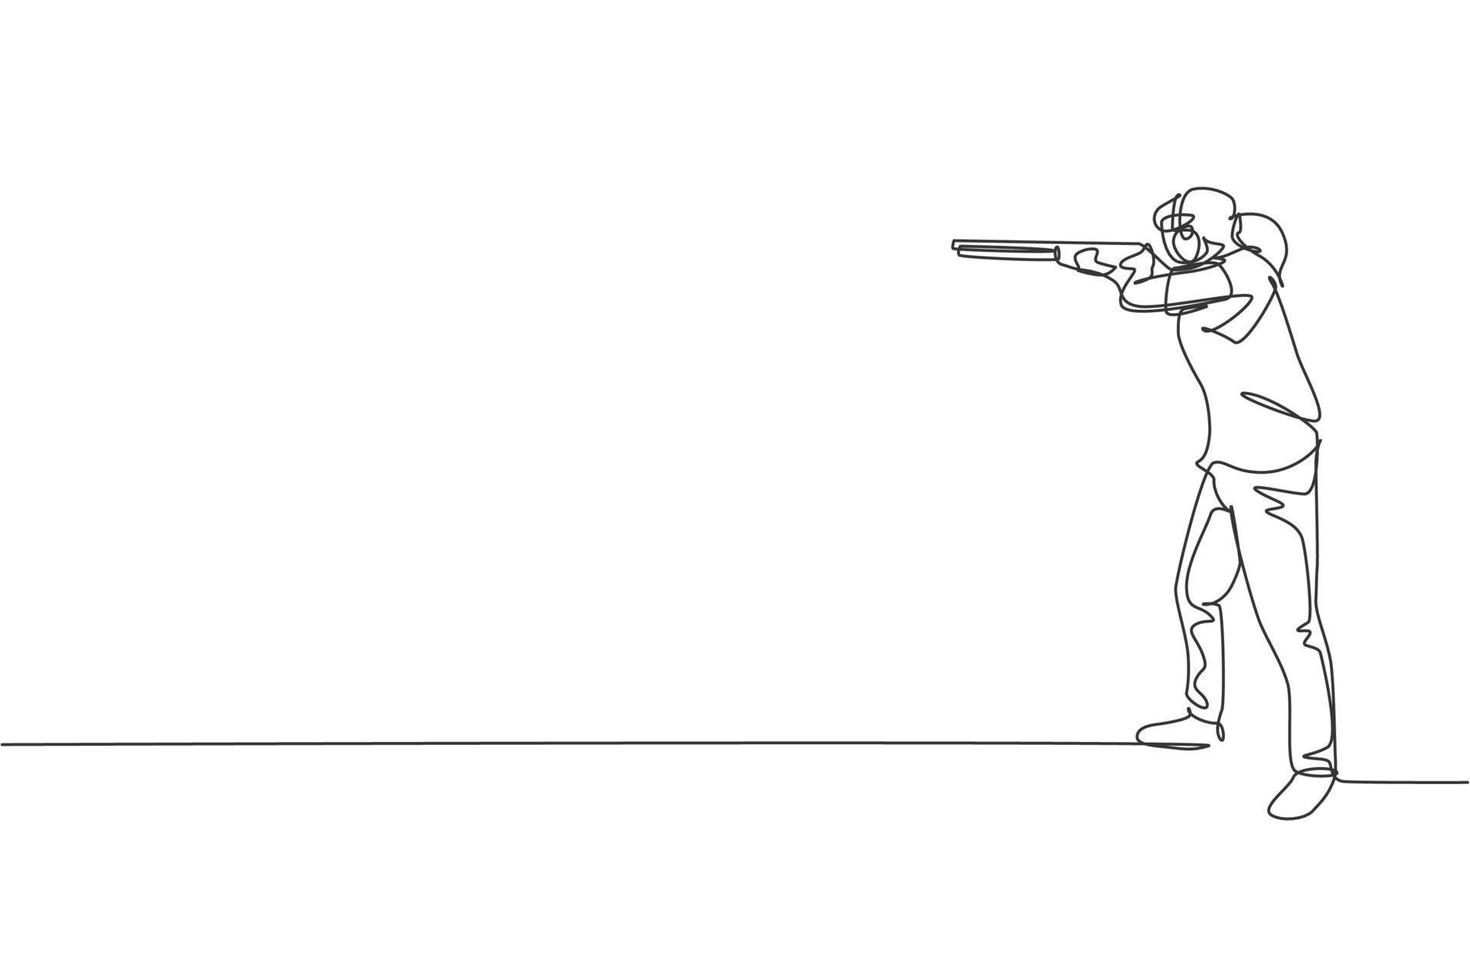 una sola línea dibujando a una mujer joven practicando para disparar al objetivo en el rango de tiro en el campo de entrenamiento ilustración vectorial gráfica. concepto deportivo de tiro al plato. diseño moderno de dibujo de línea continua vector